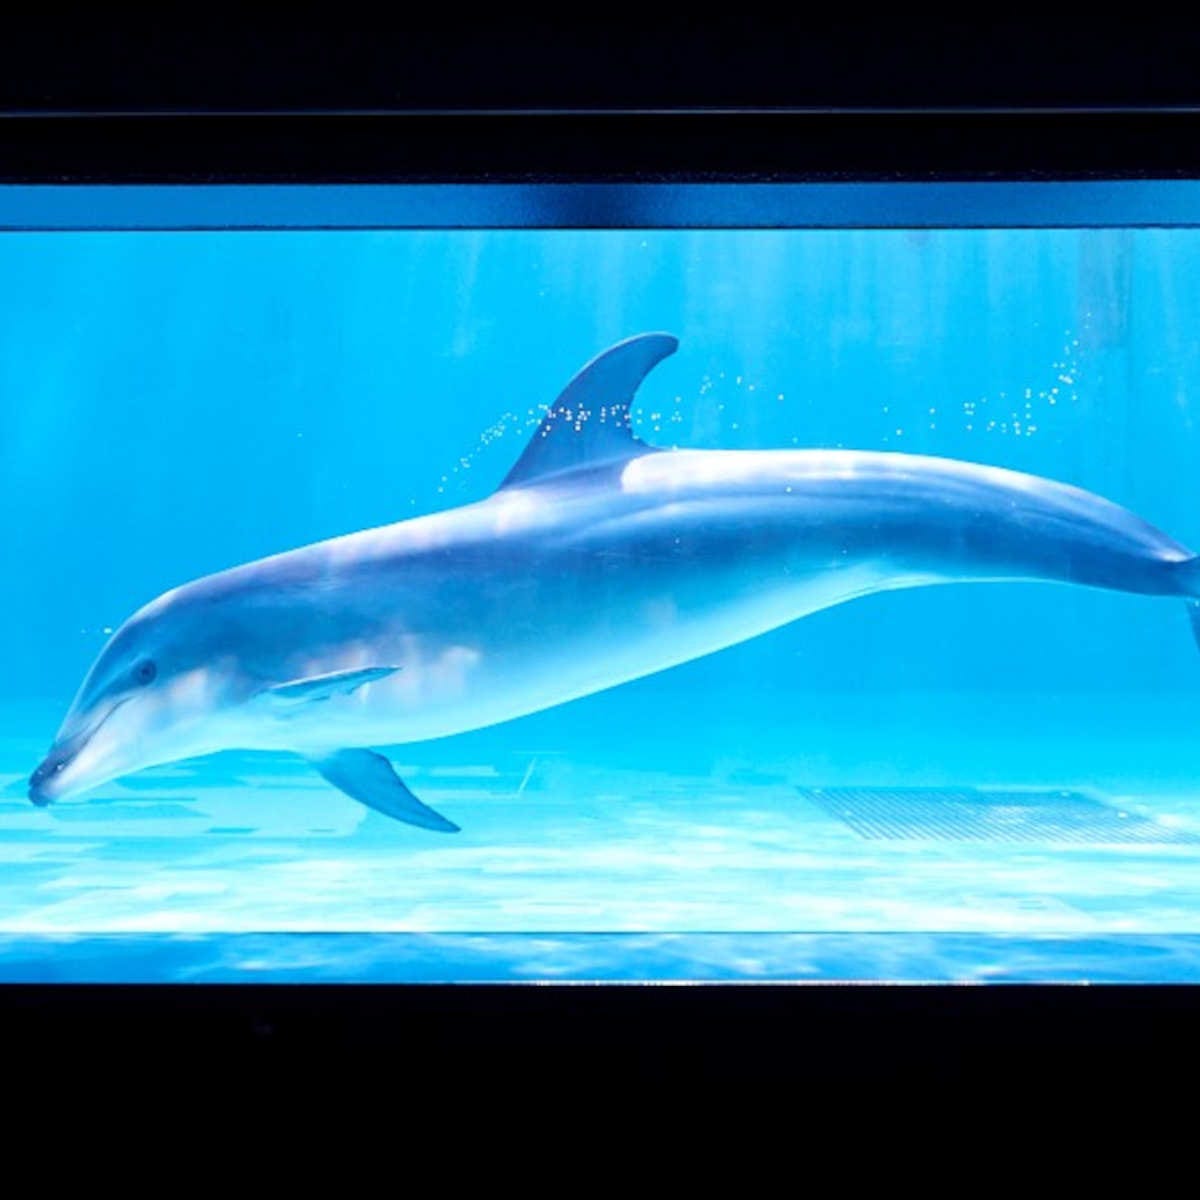 【水族館】「しながわ水族館」で立地にちなんだ東京湾の生き物の展示や、目の前で見られるショーを楽しむ